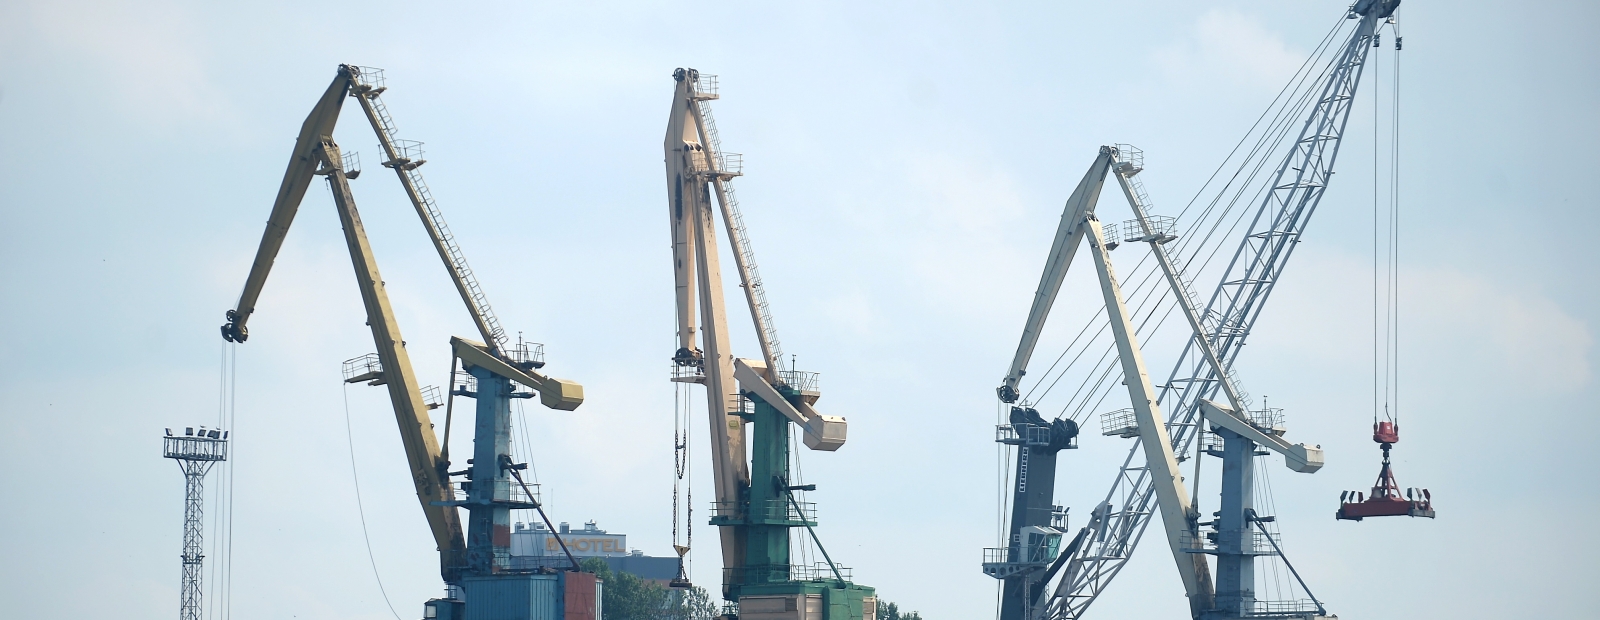 Le port de Riga est le 231e port à conteneurs le plus efficace au monde / Diena